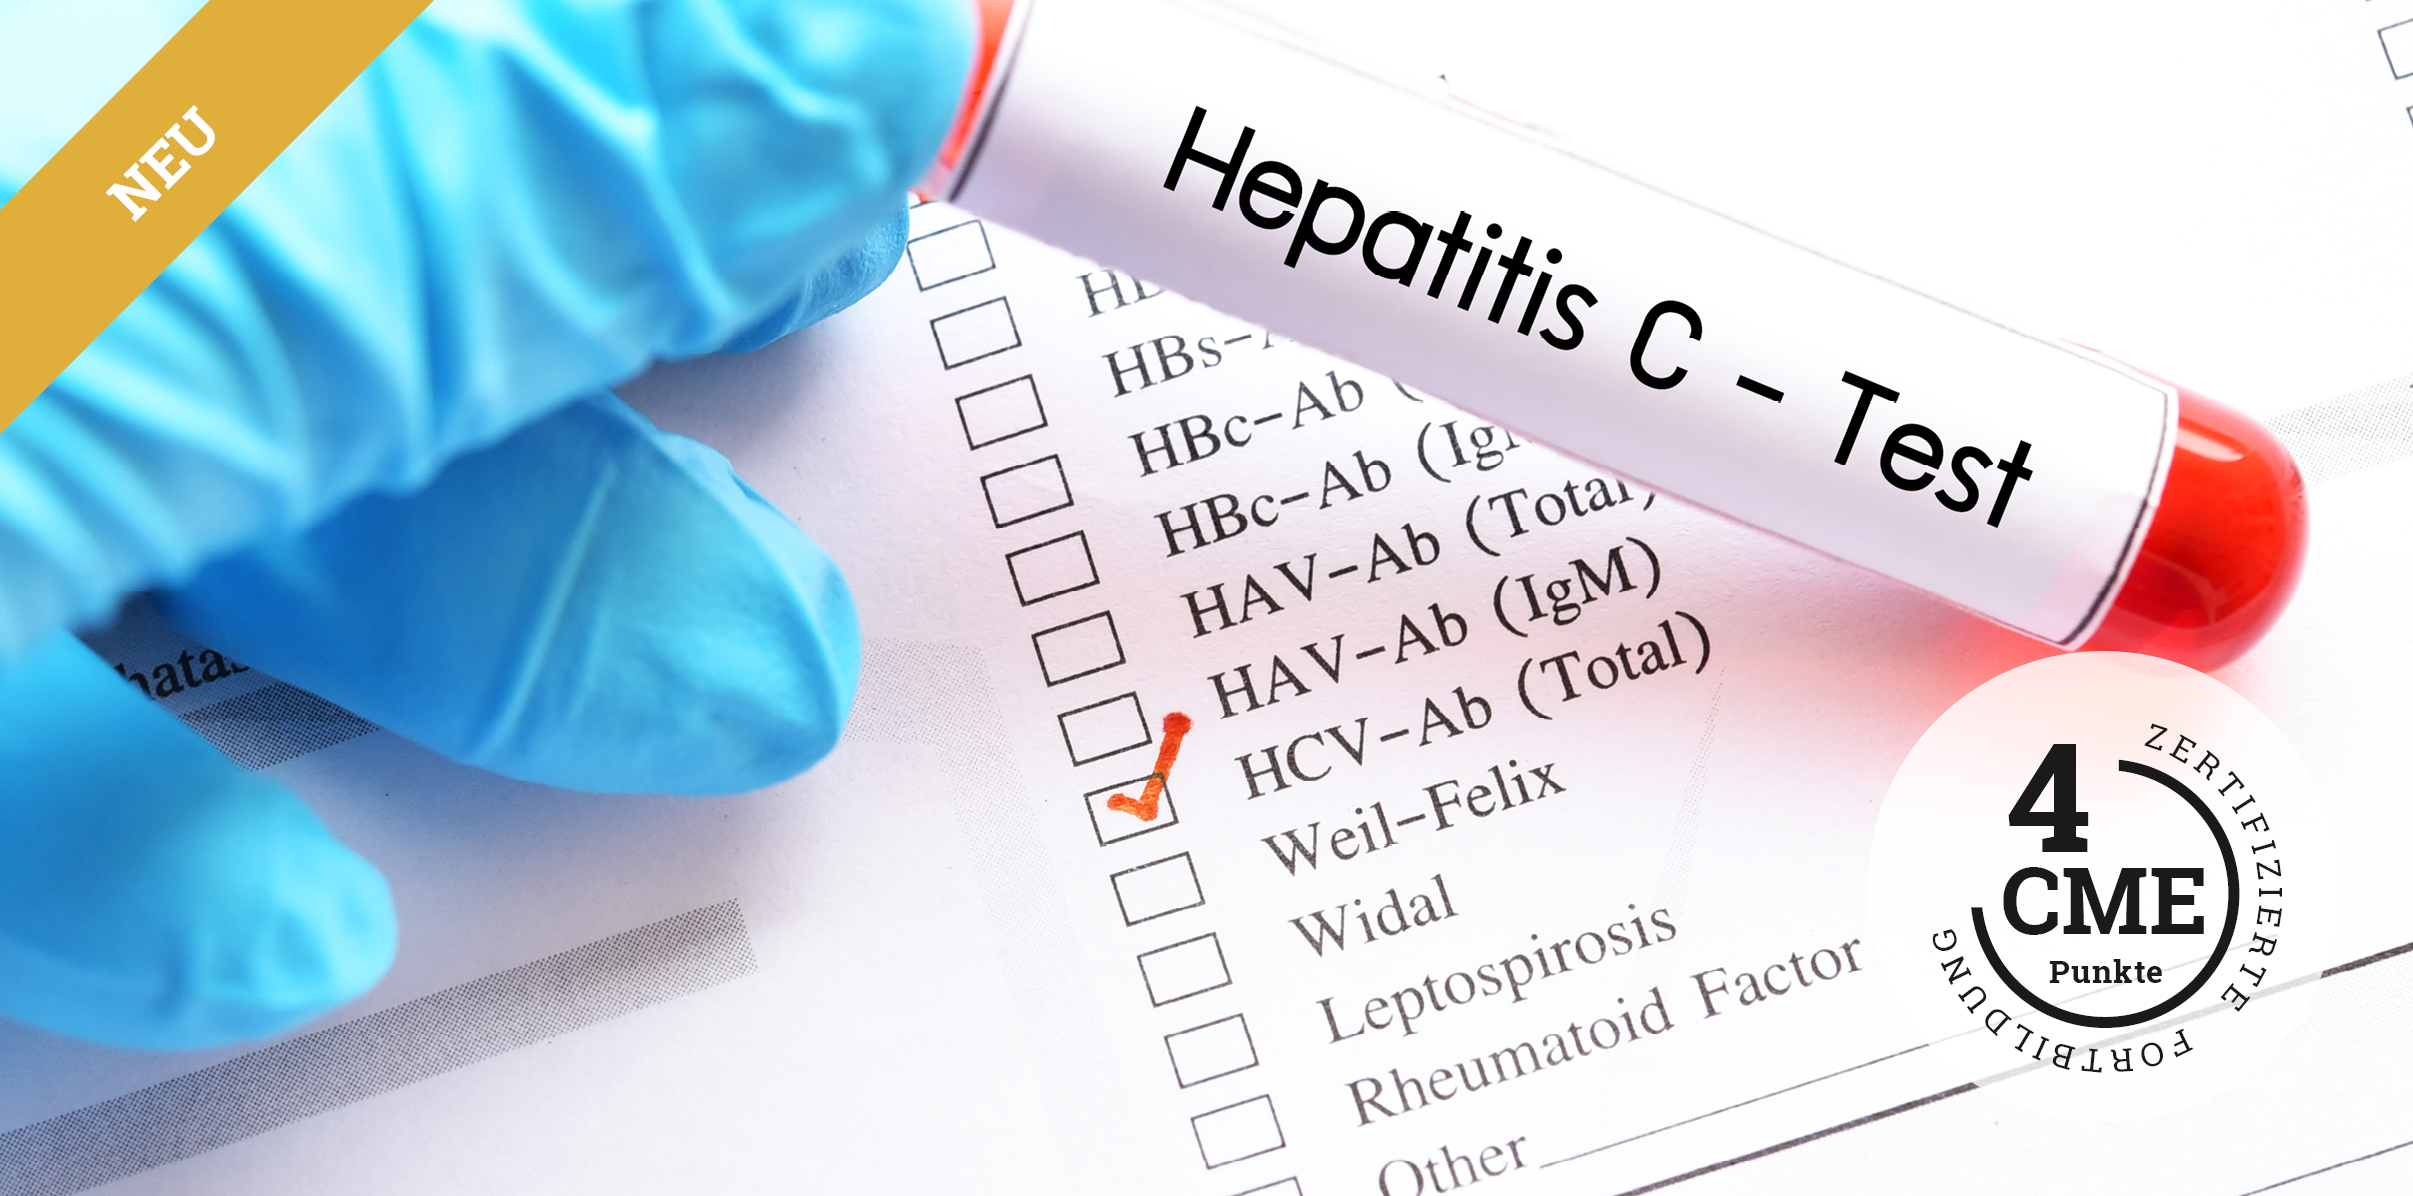 CME zu Hepatitis C bei Drogenkonsum